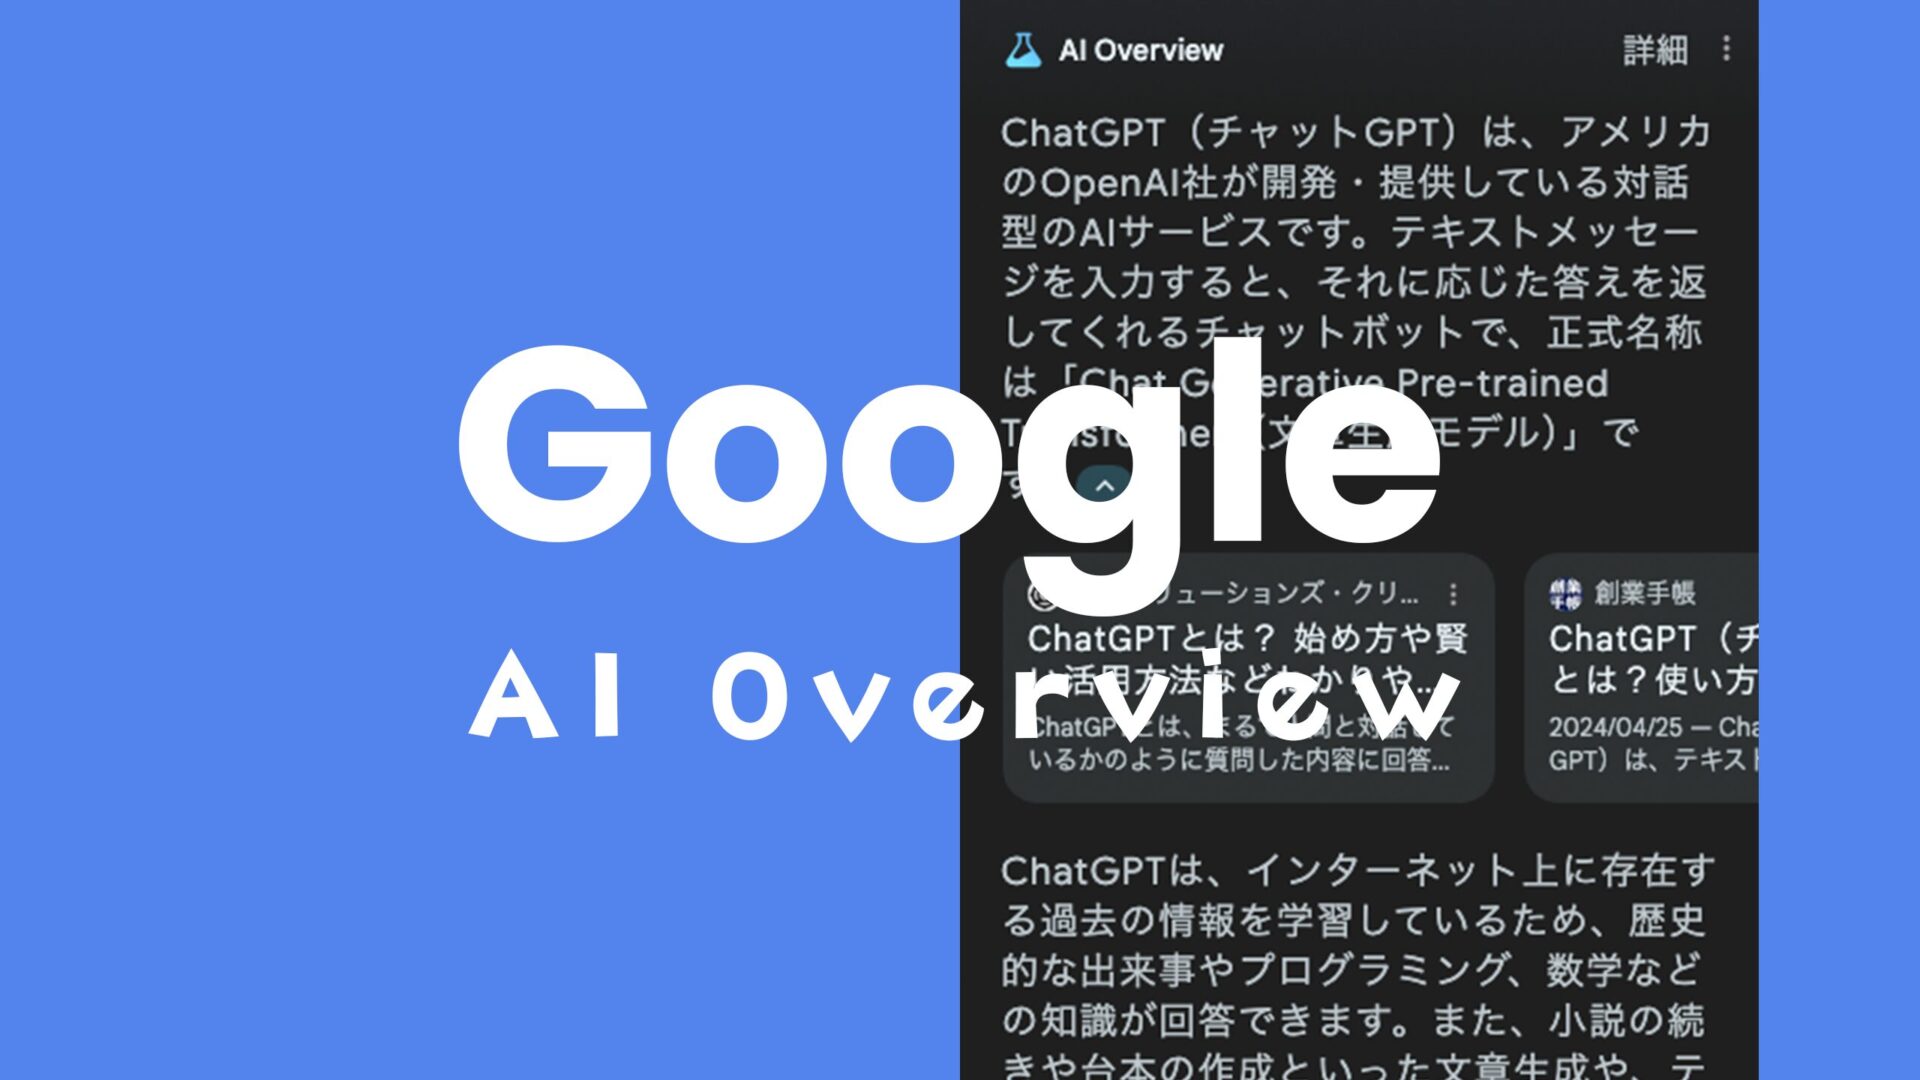 グーグル検索の生成AI「AI Overview」をスマホでオフ&非表示にする方法のサムネイル画像